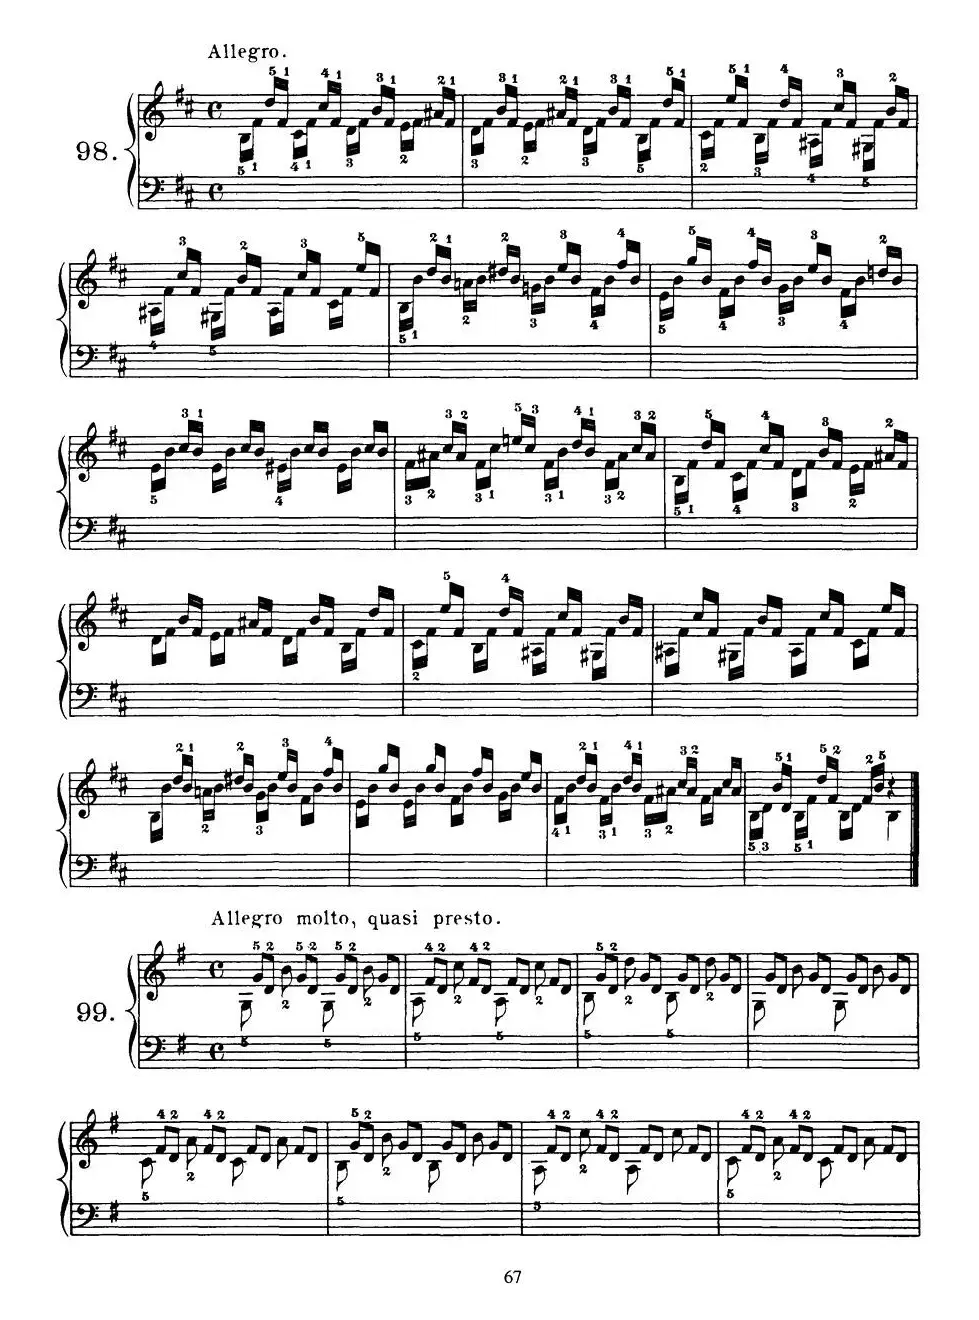 Czerny - 100 Progressive Studies Op.139（91—100）